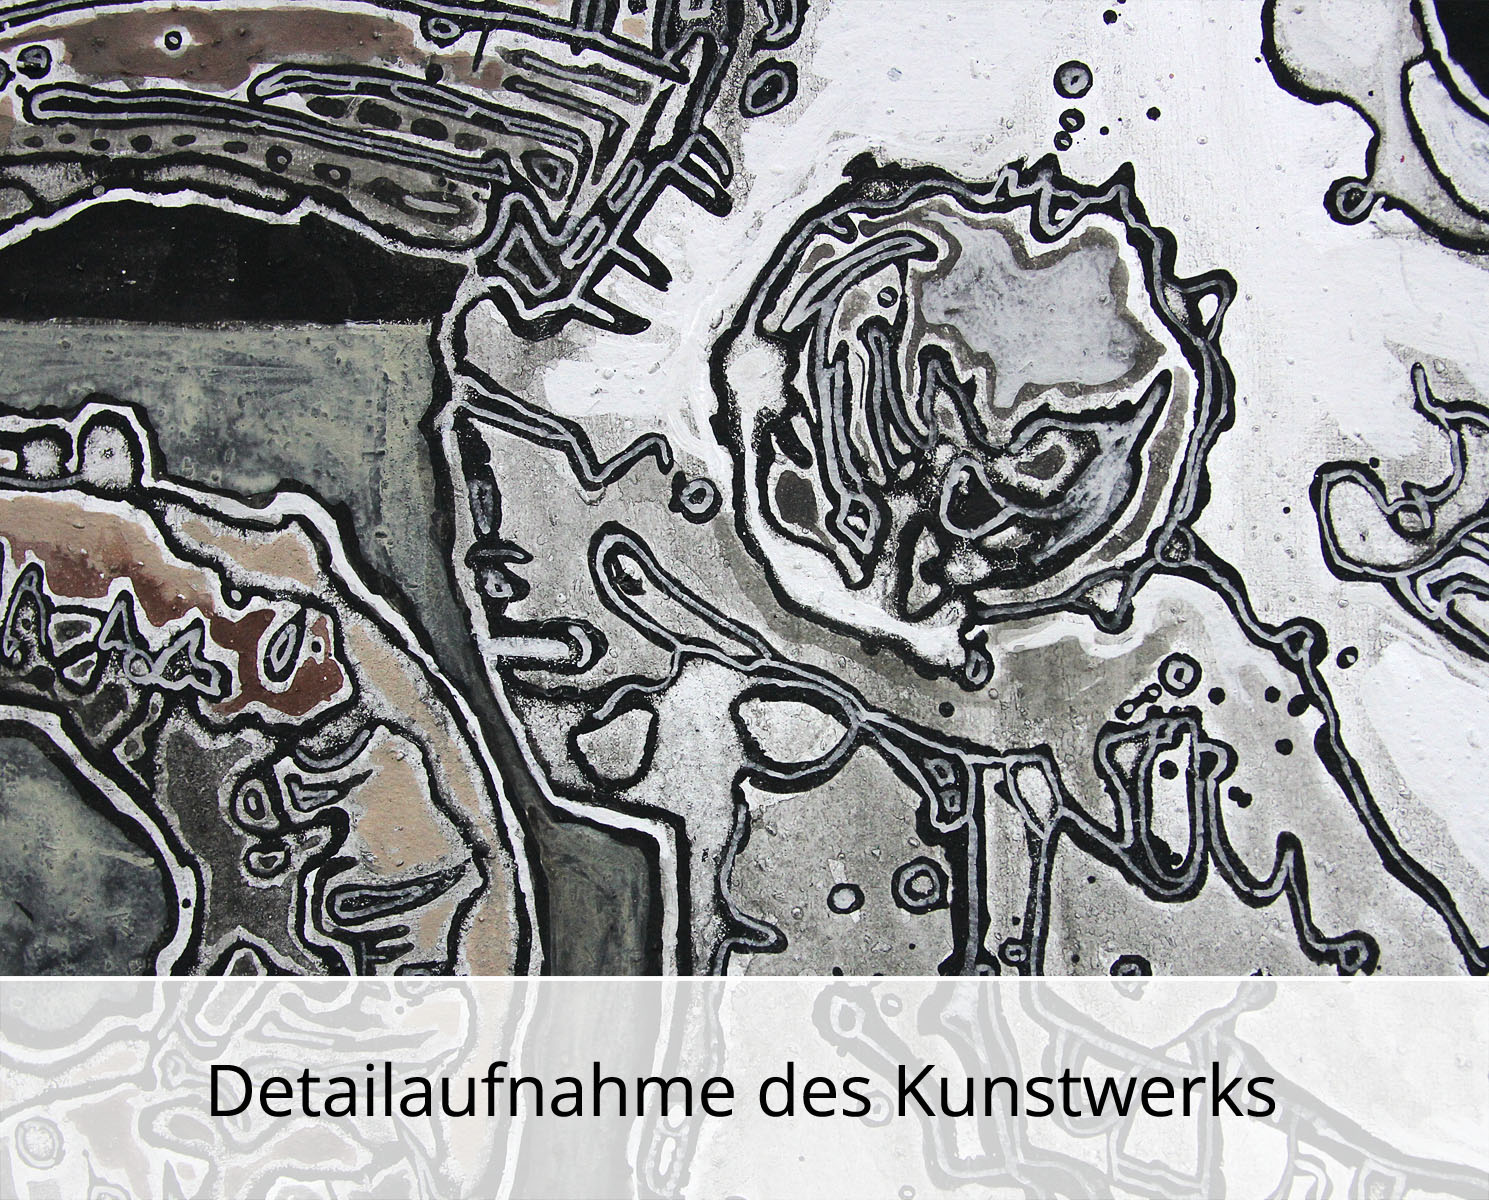 C. Blechschmidt: "Schädel innen Wund", Original/Unikat, zeitgenössisches Acrylgemälde